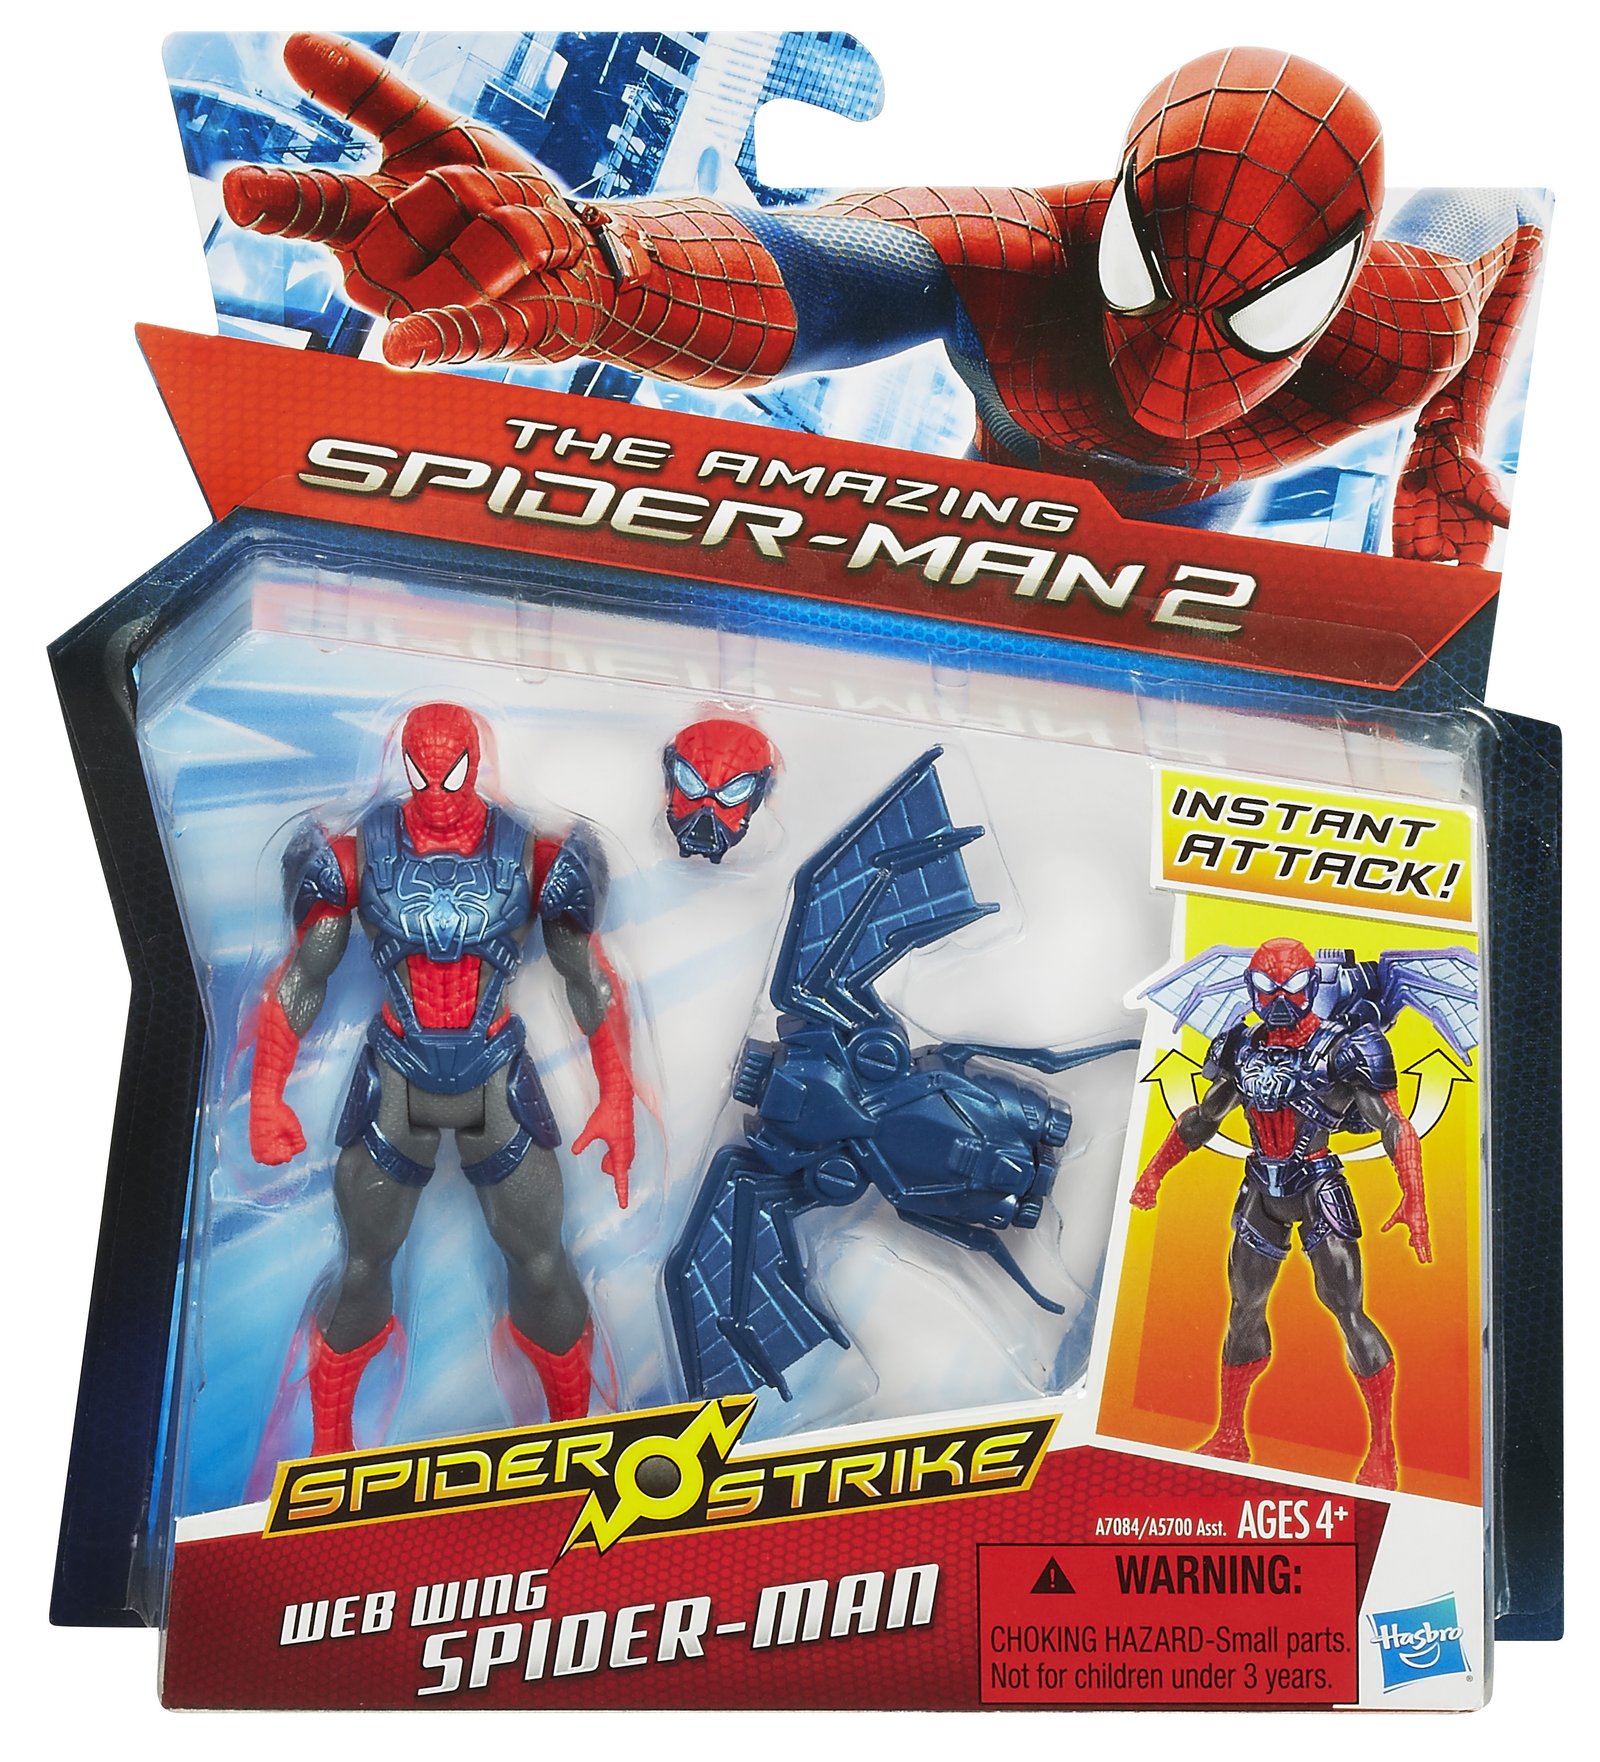 Amazing Spider-Man 2: Spider Strike: Web Wing Spider-Man, package